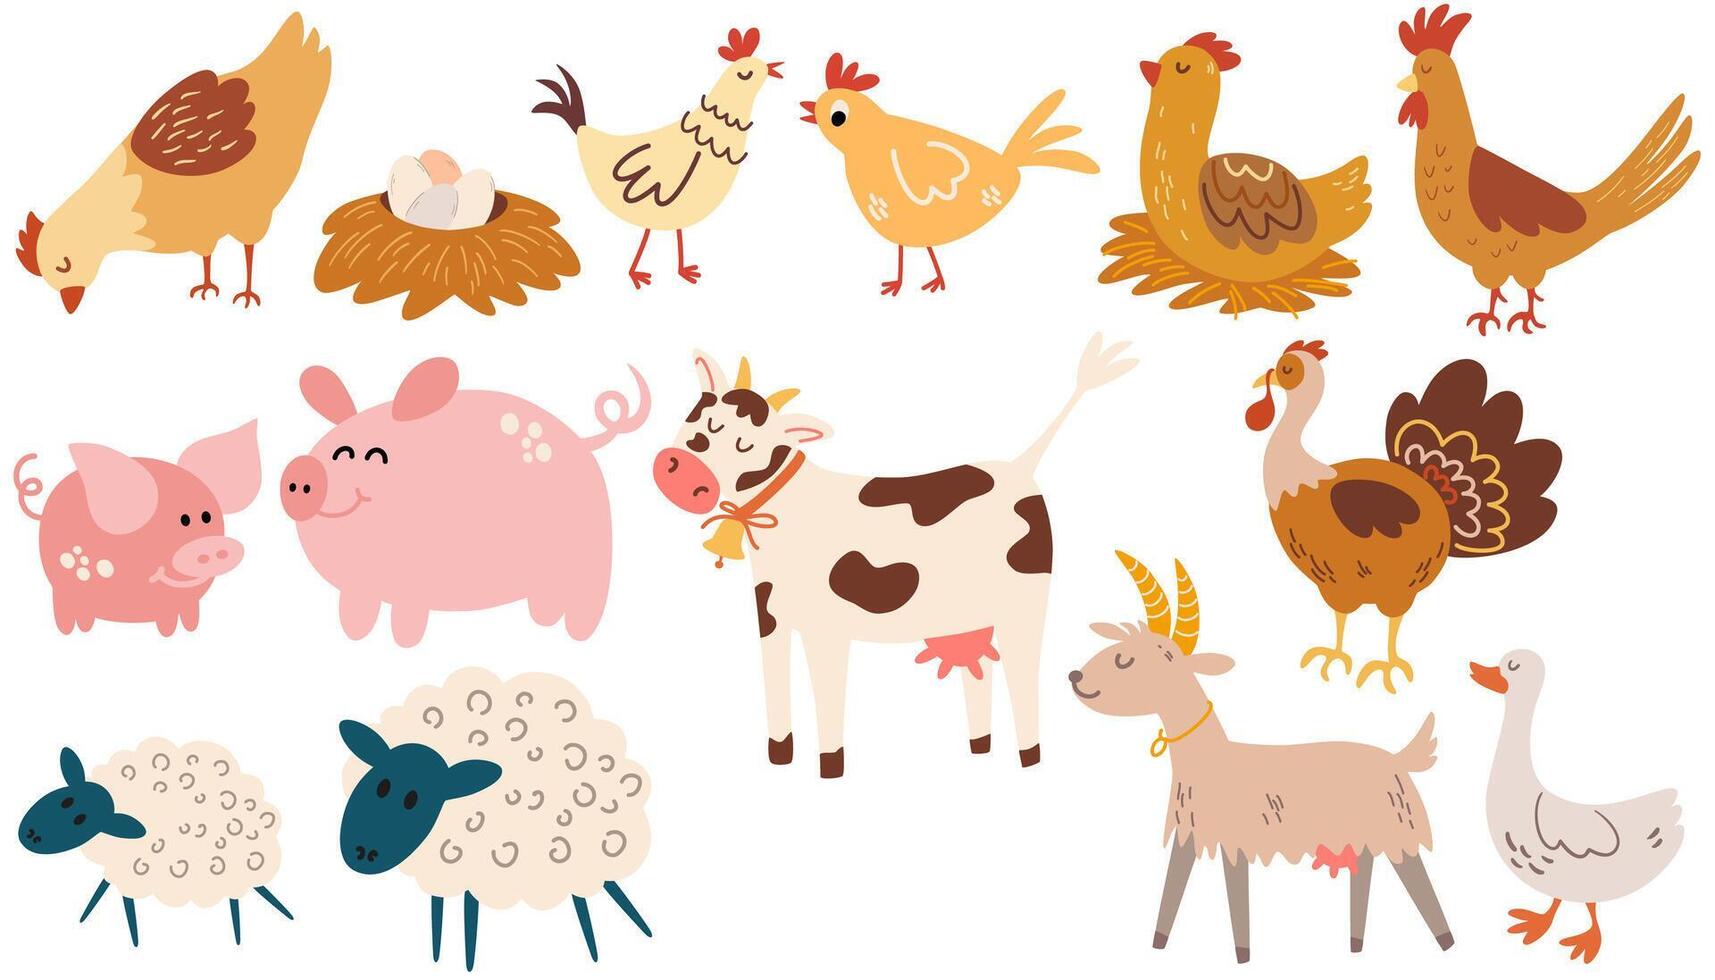 granja animales colocar. variedad de gracioso granja animales en un dibujos animados plano estilo. mano dibujado de colores de moda vector ilustraciones.